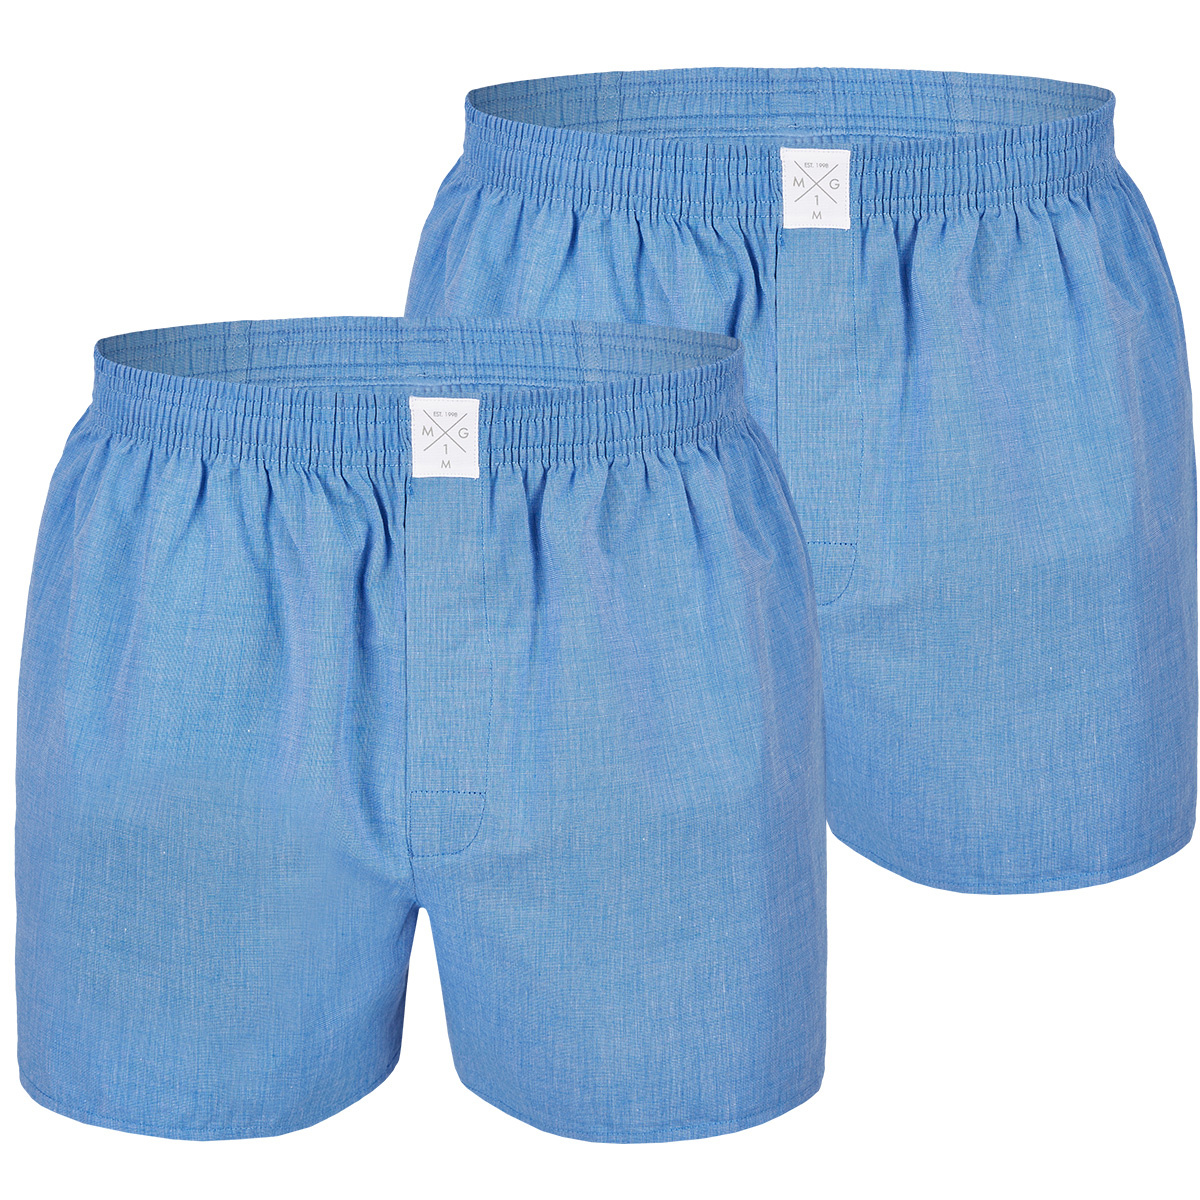 Afbeelding van MG-1 Wijde boxershorts heren 2-pack blauw uni